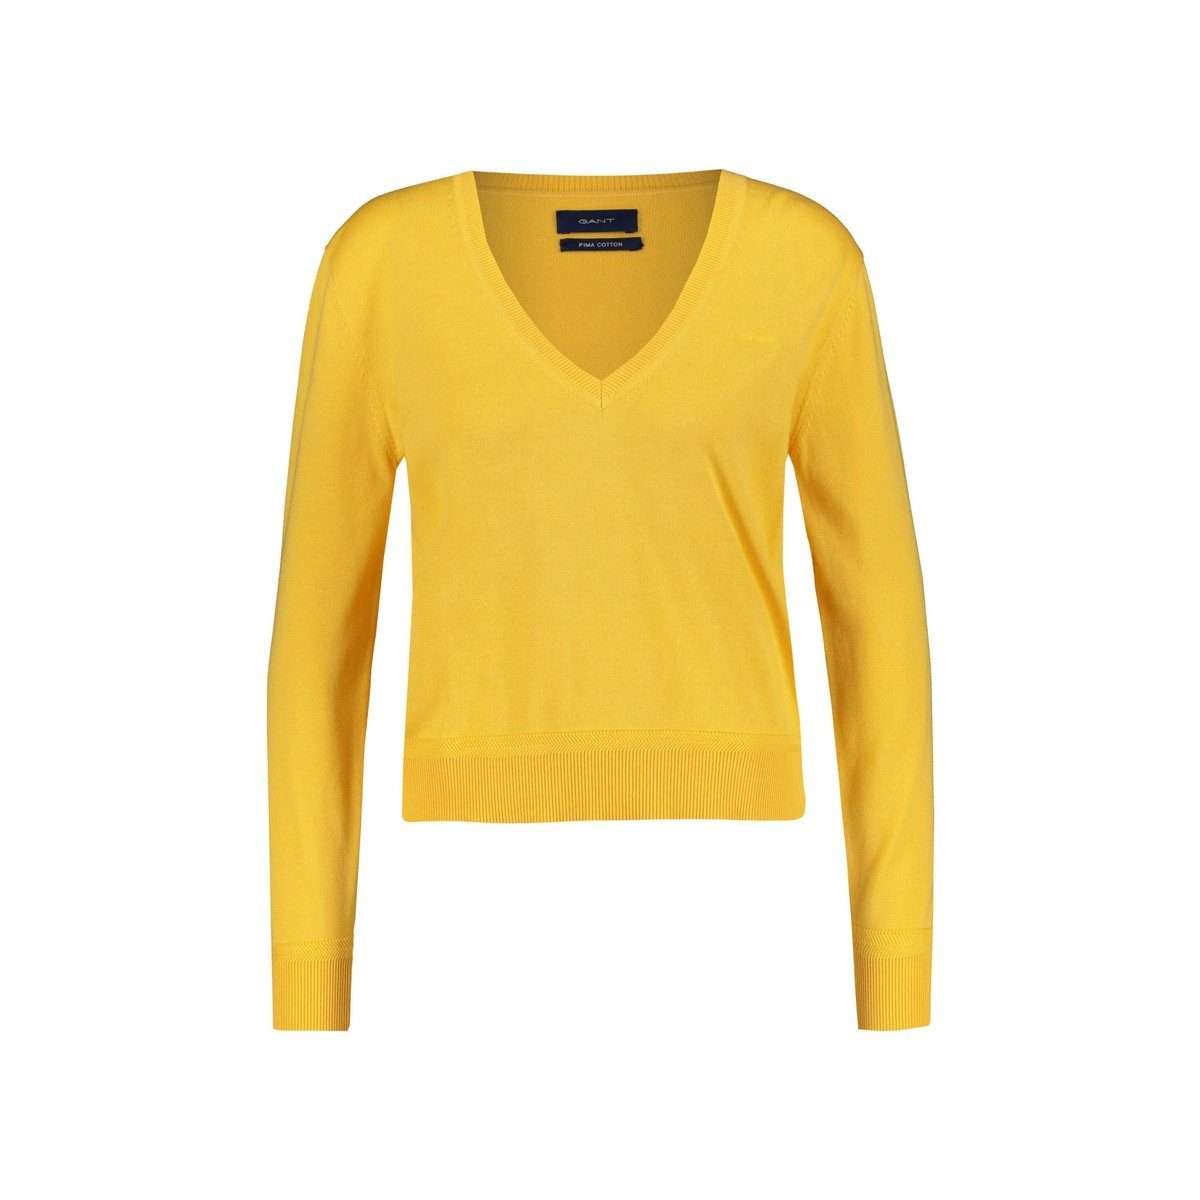 Длинный свитер желтый стандартного кроя (1 шт.)